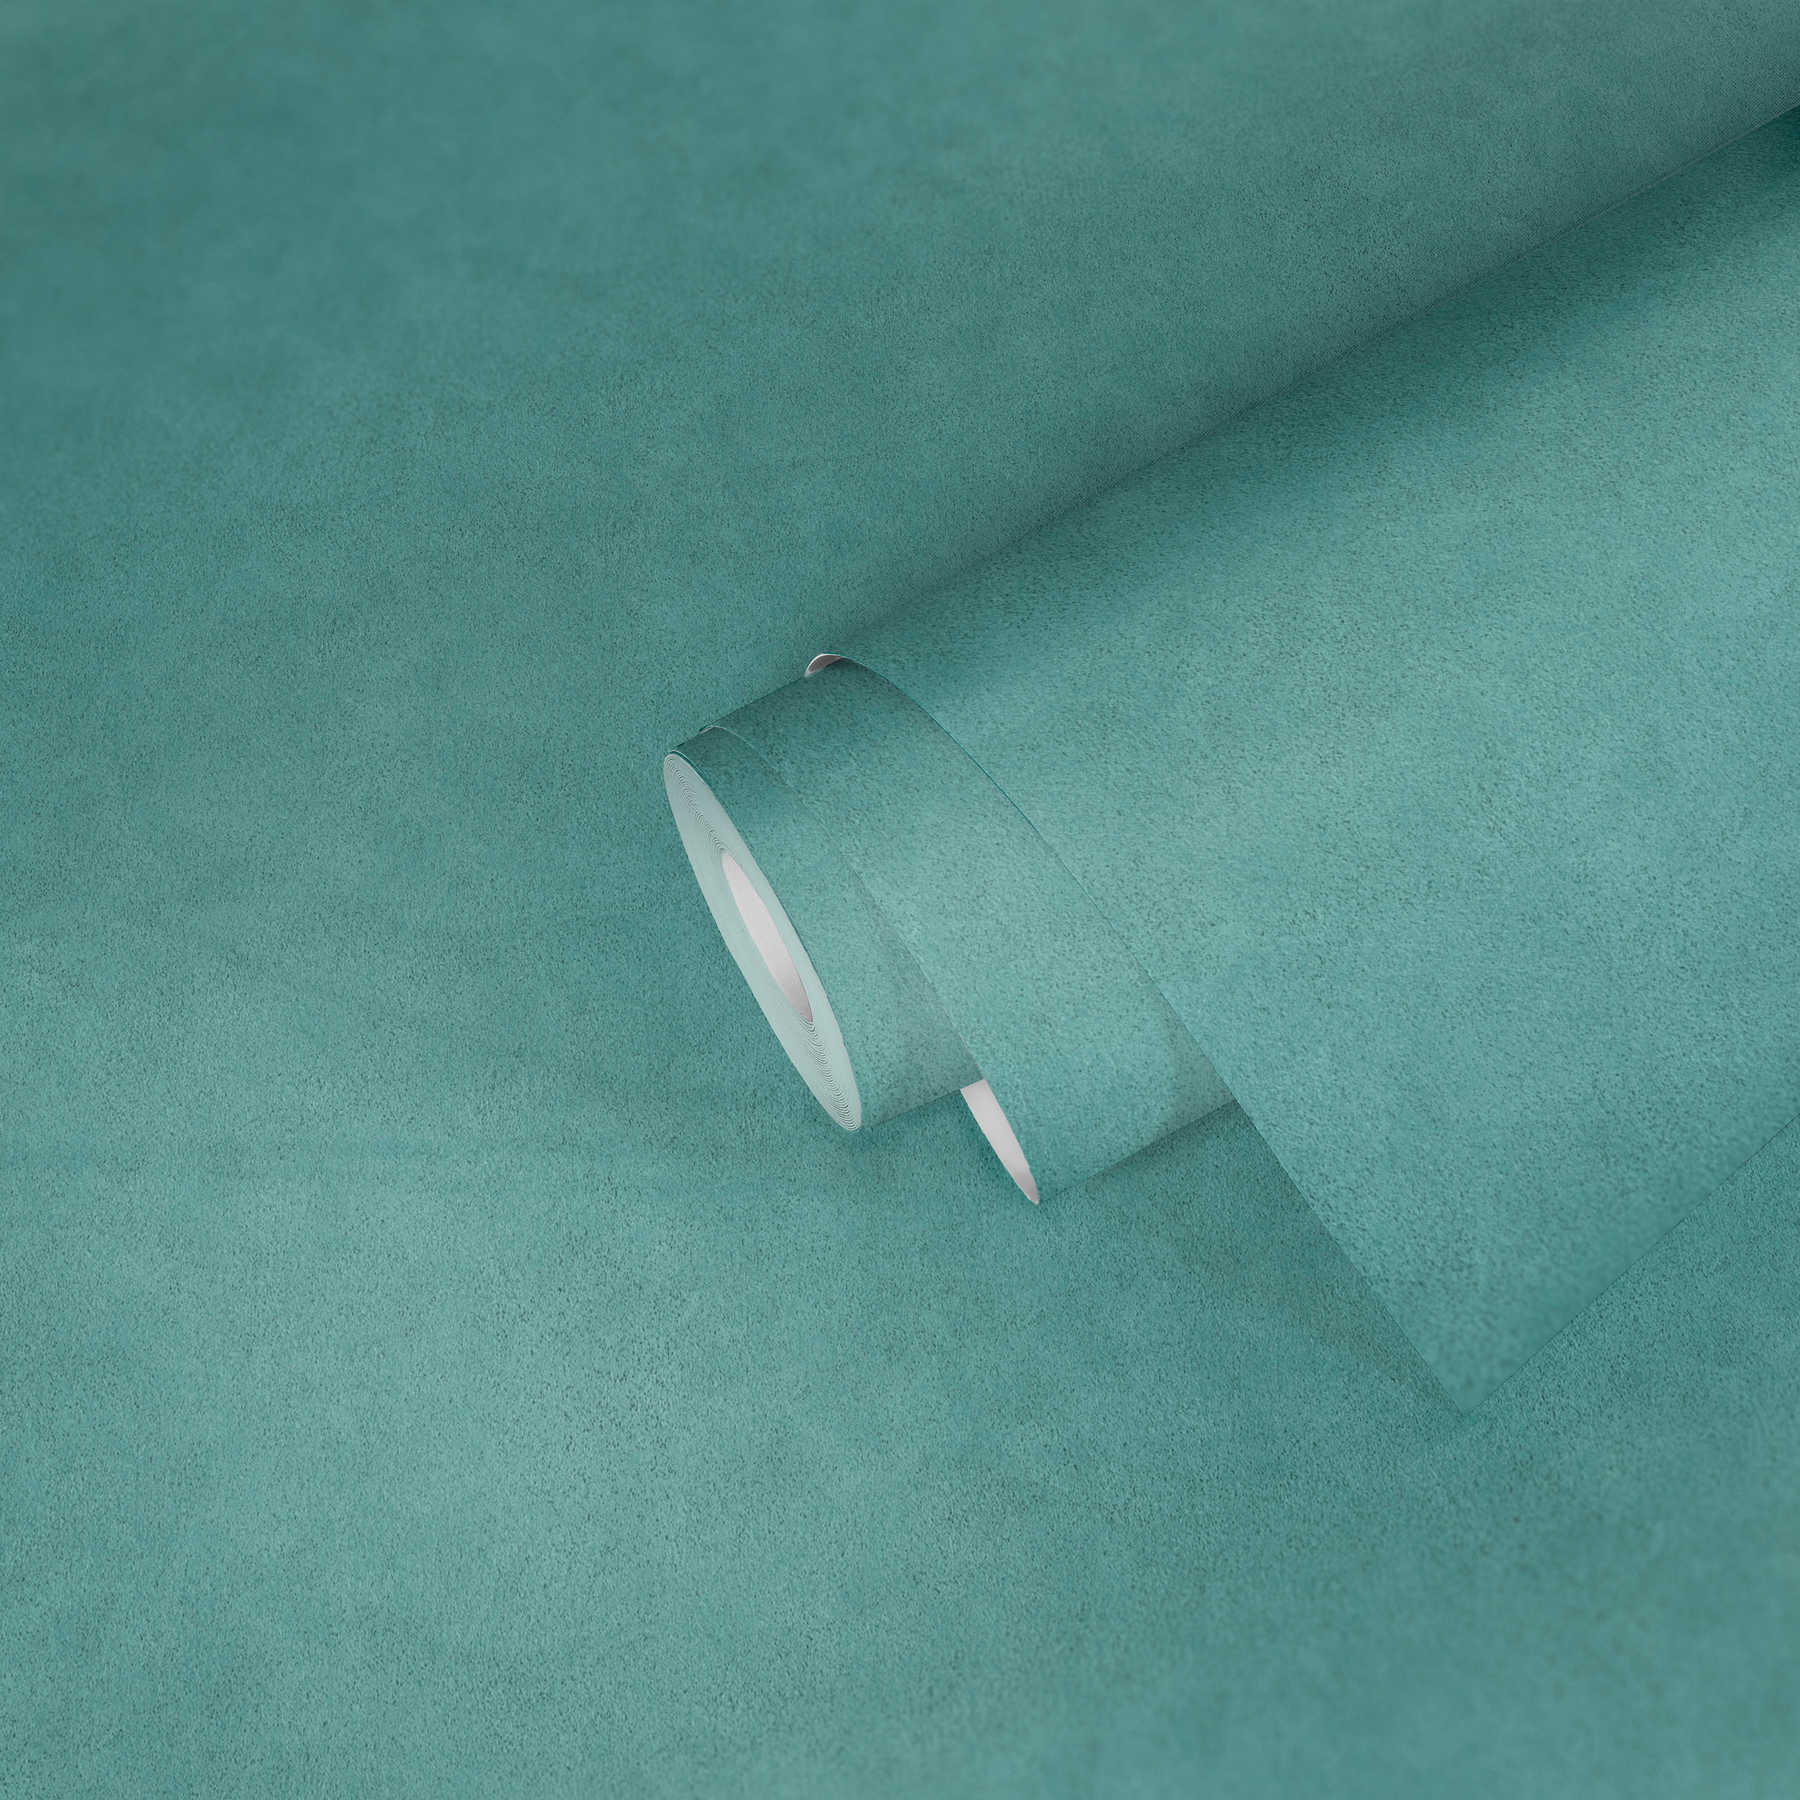             Papier peint uni avec structure de surface finement chiné - bleu
        